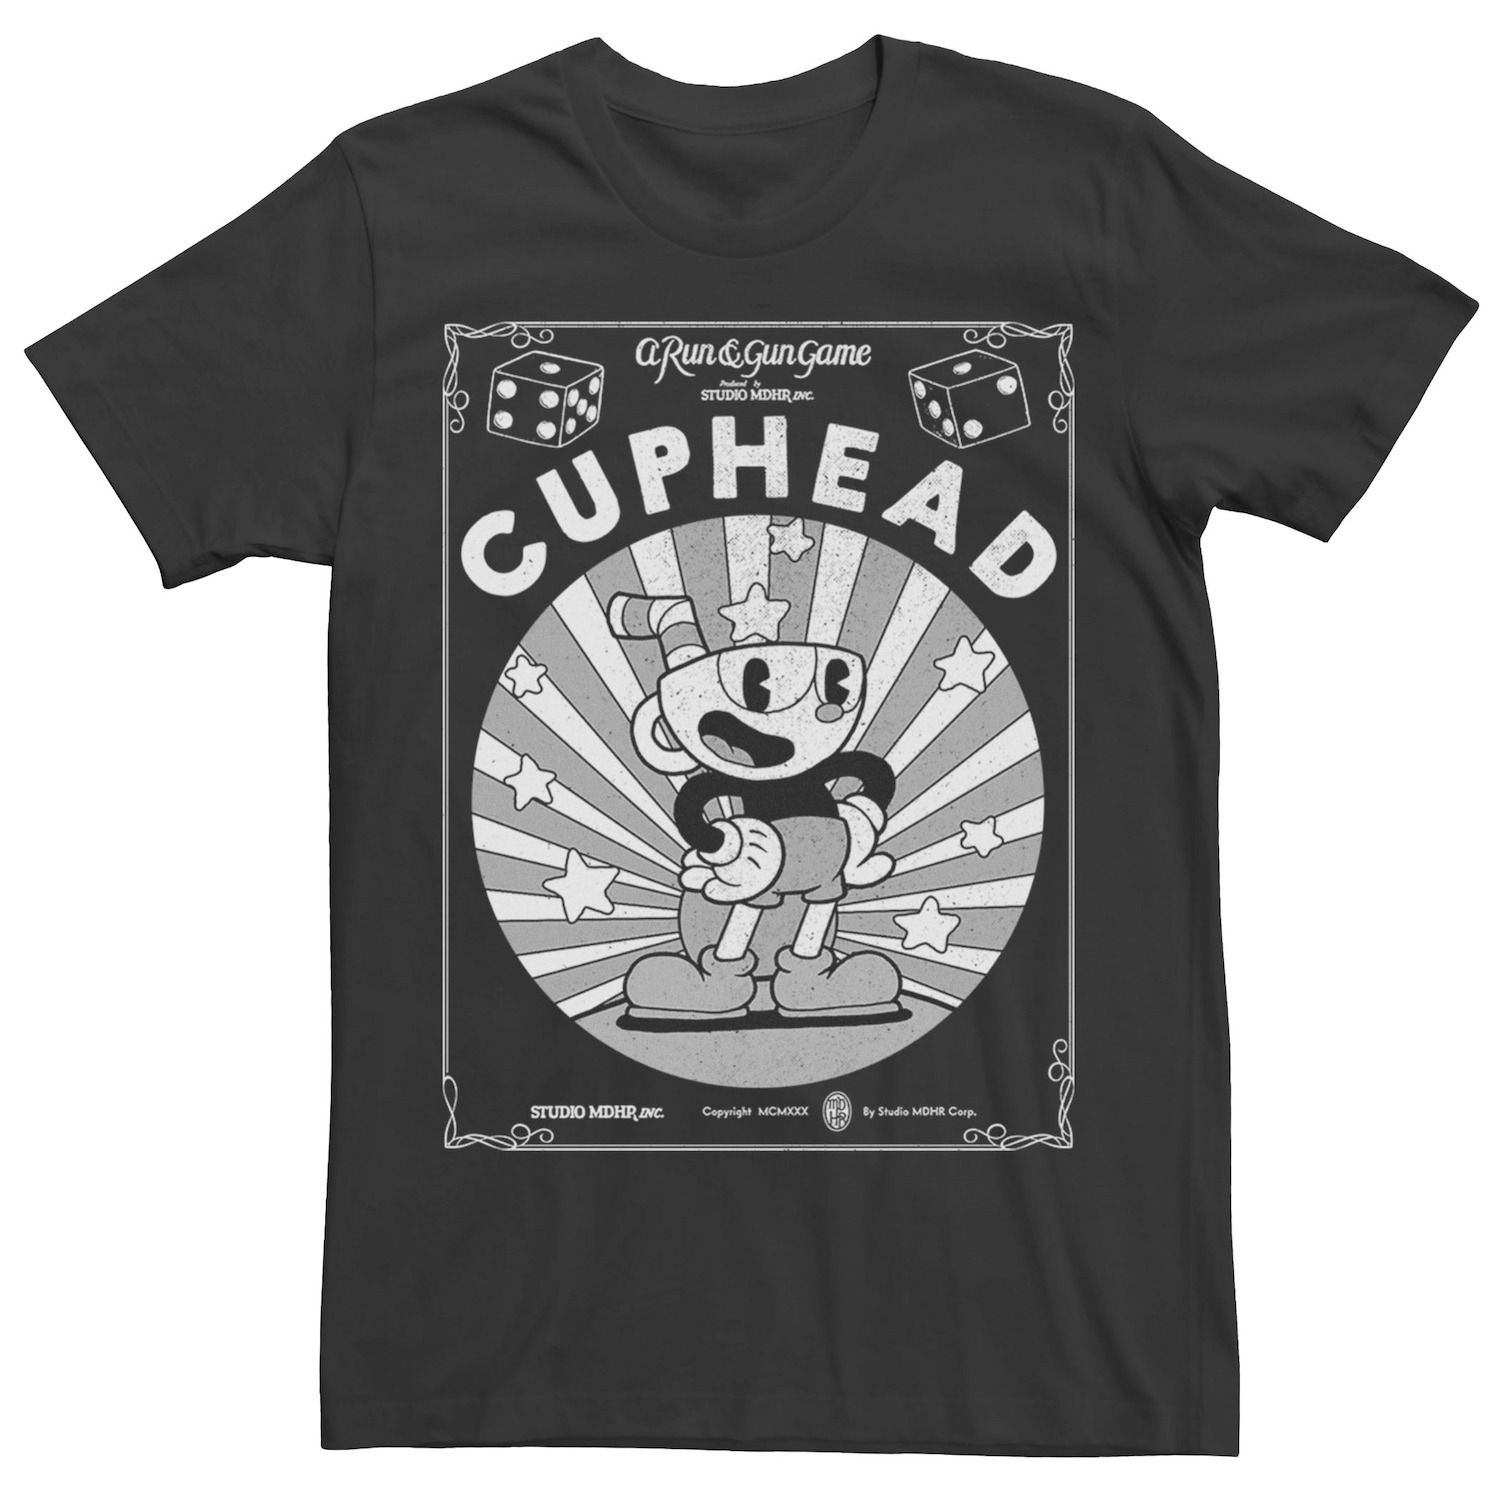 Мужская футболка с изображением плаката и плаката Cuphead Licensed Character футболка с изображением плаката и сетки disney villains для юниоров licensed character